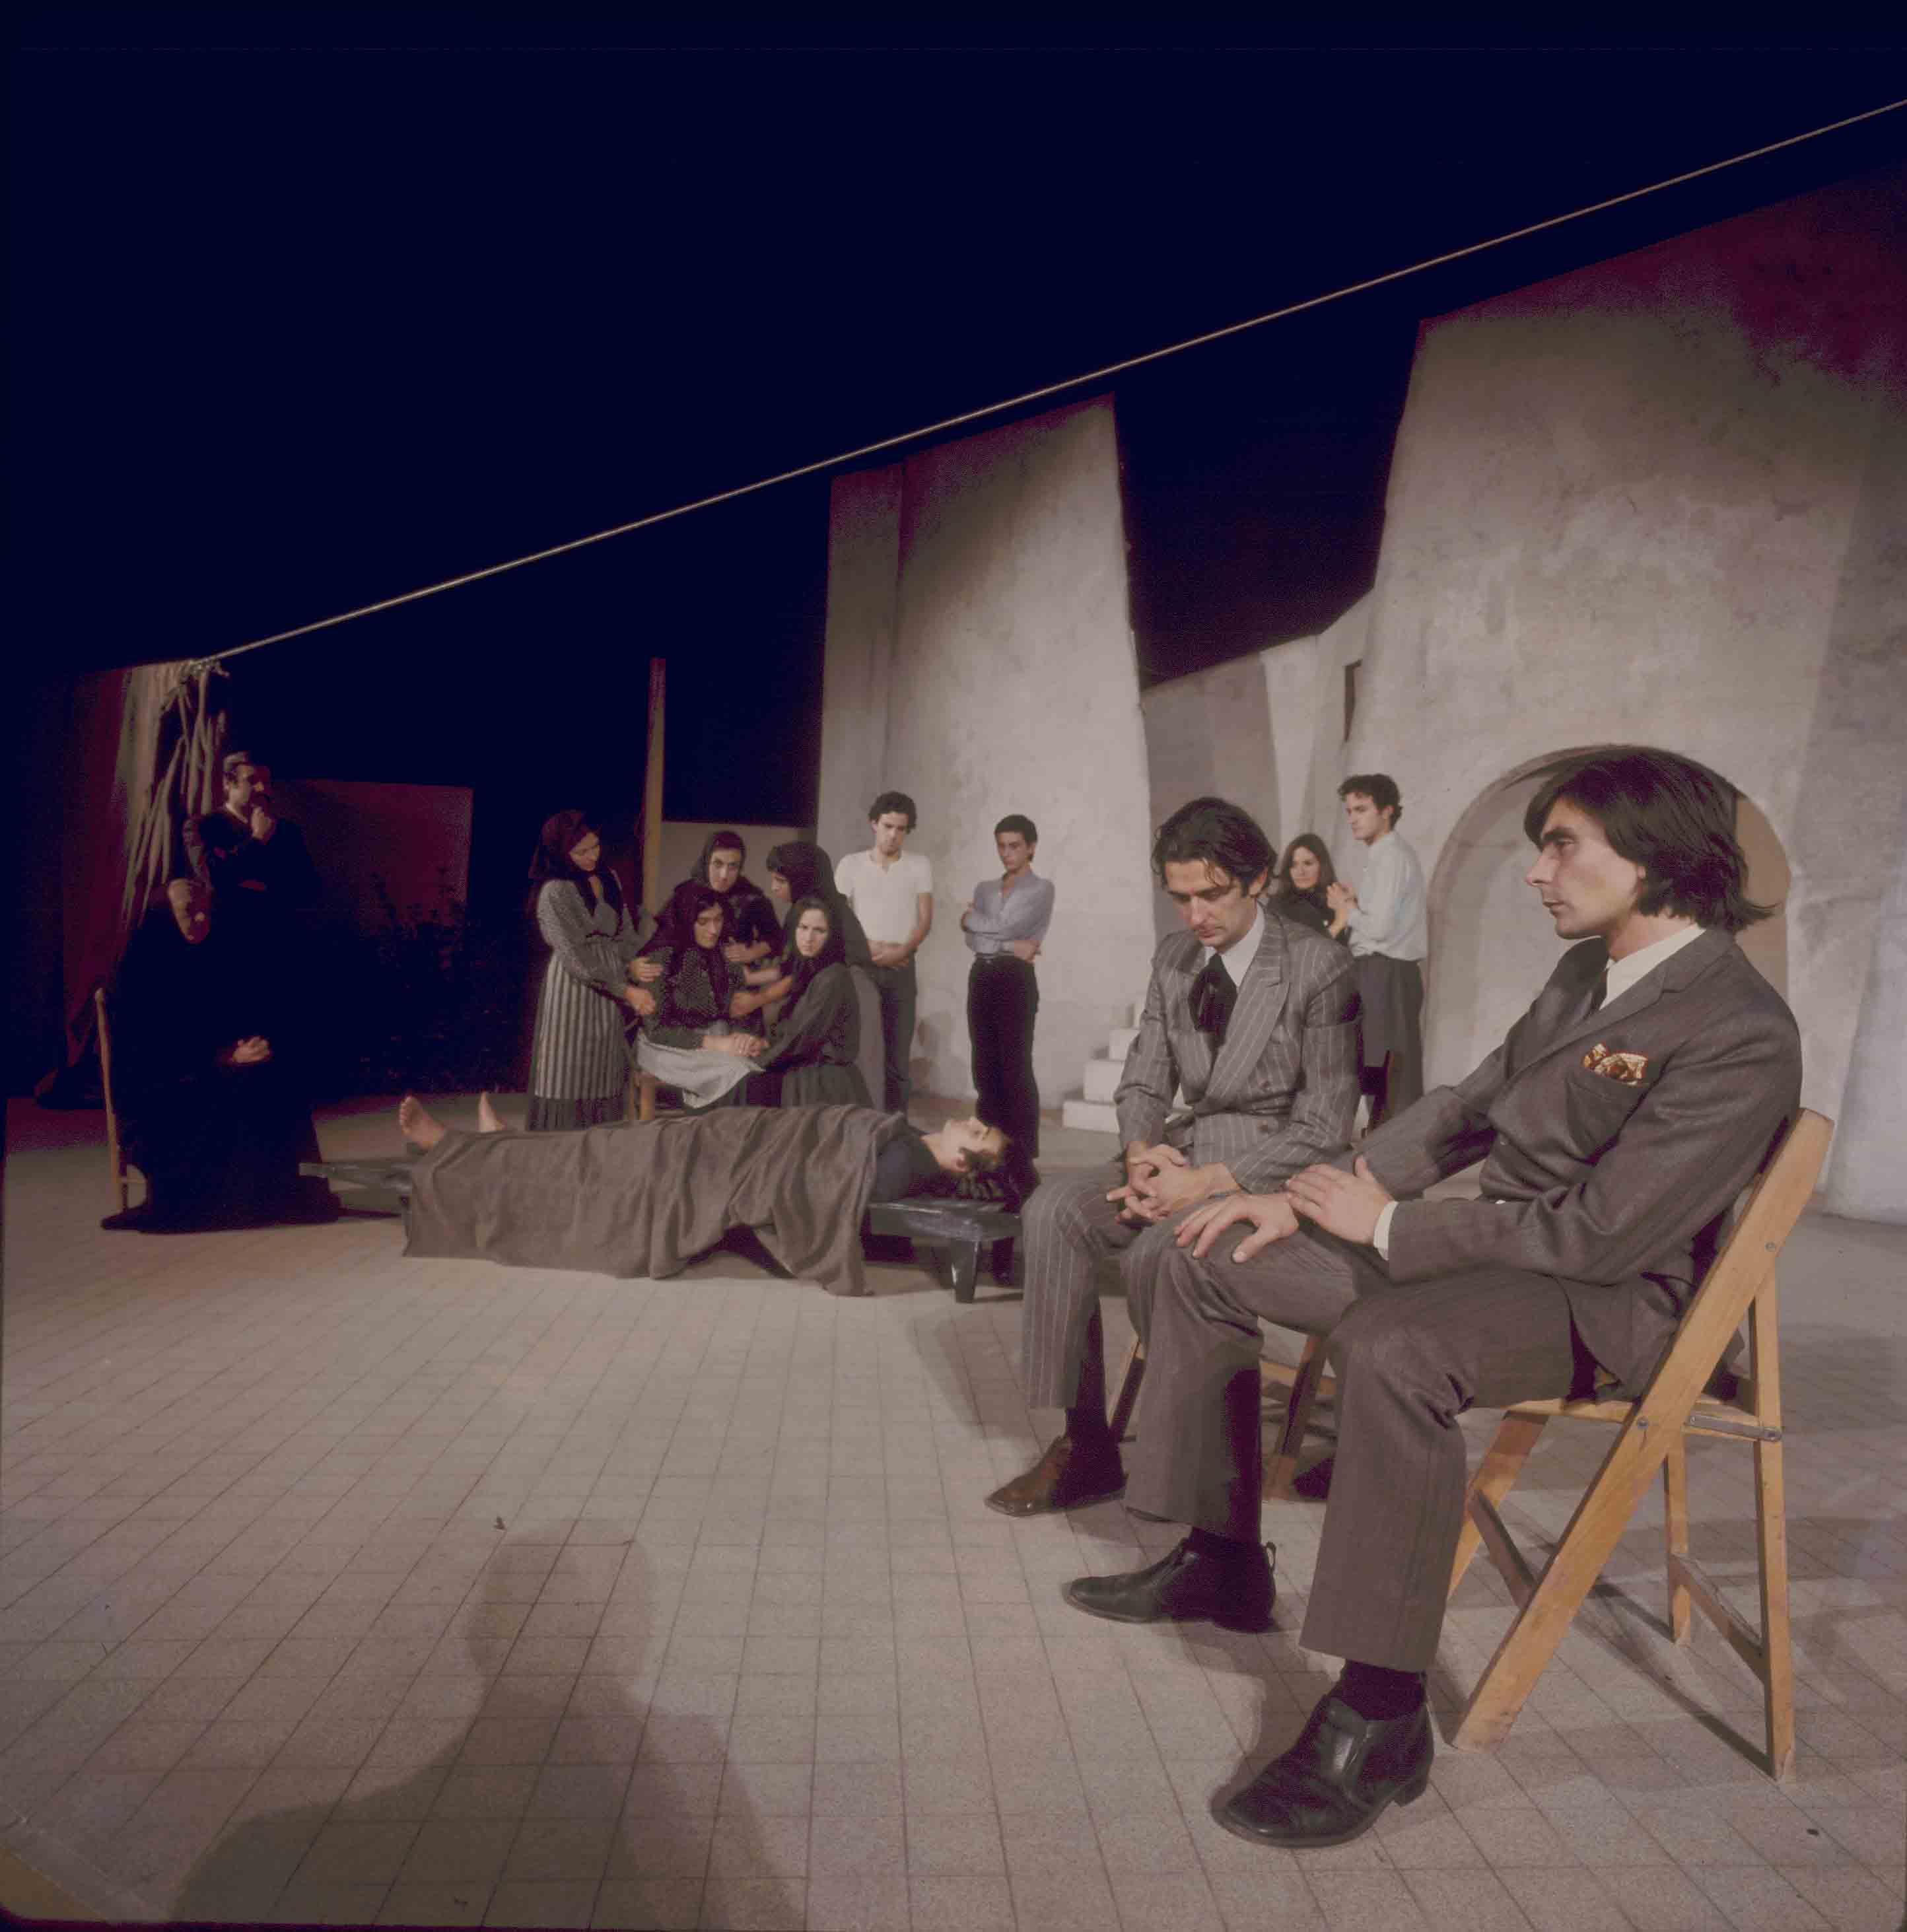 Fotografia. Pau Barceló. Ronda de mort a Sinera. Companyia Adrià Gual. Teatre Romea, 1970